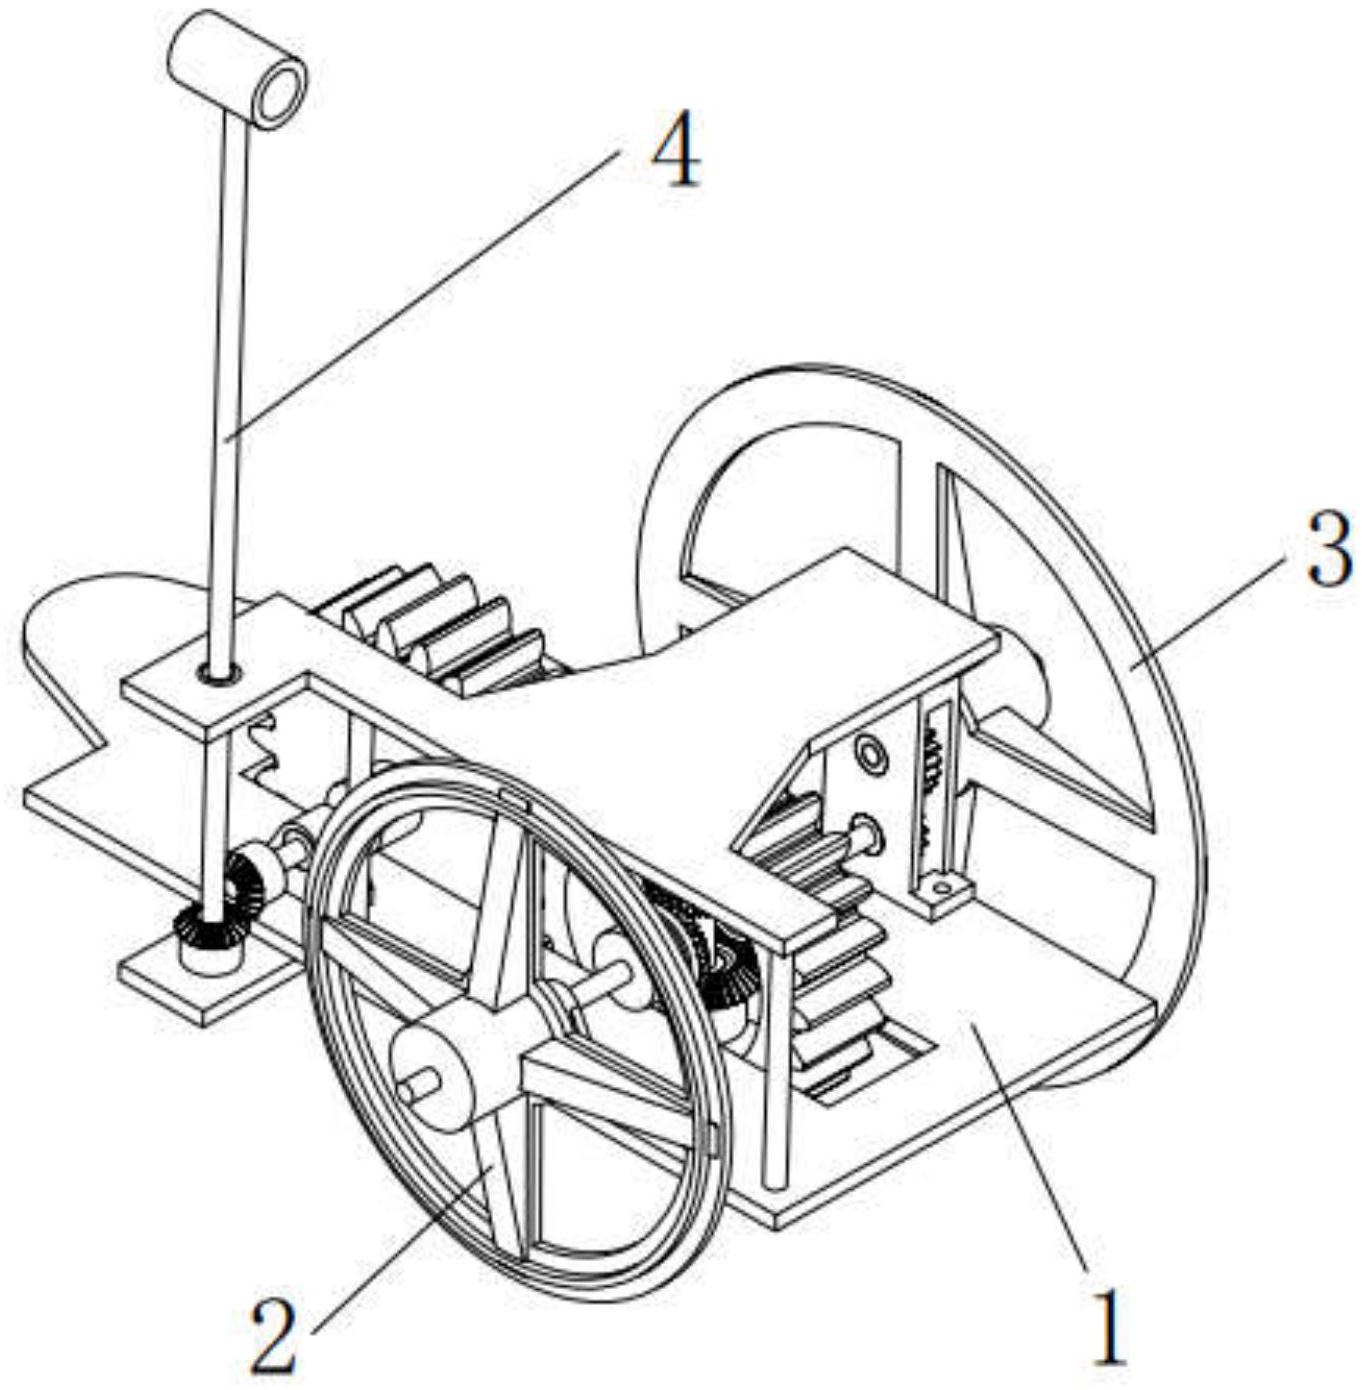 两车轮通过齿轮系与指南杆连接;所述齿轮系内包含有一个差动轮系,差动